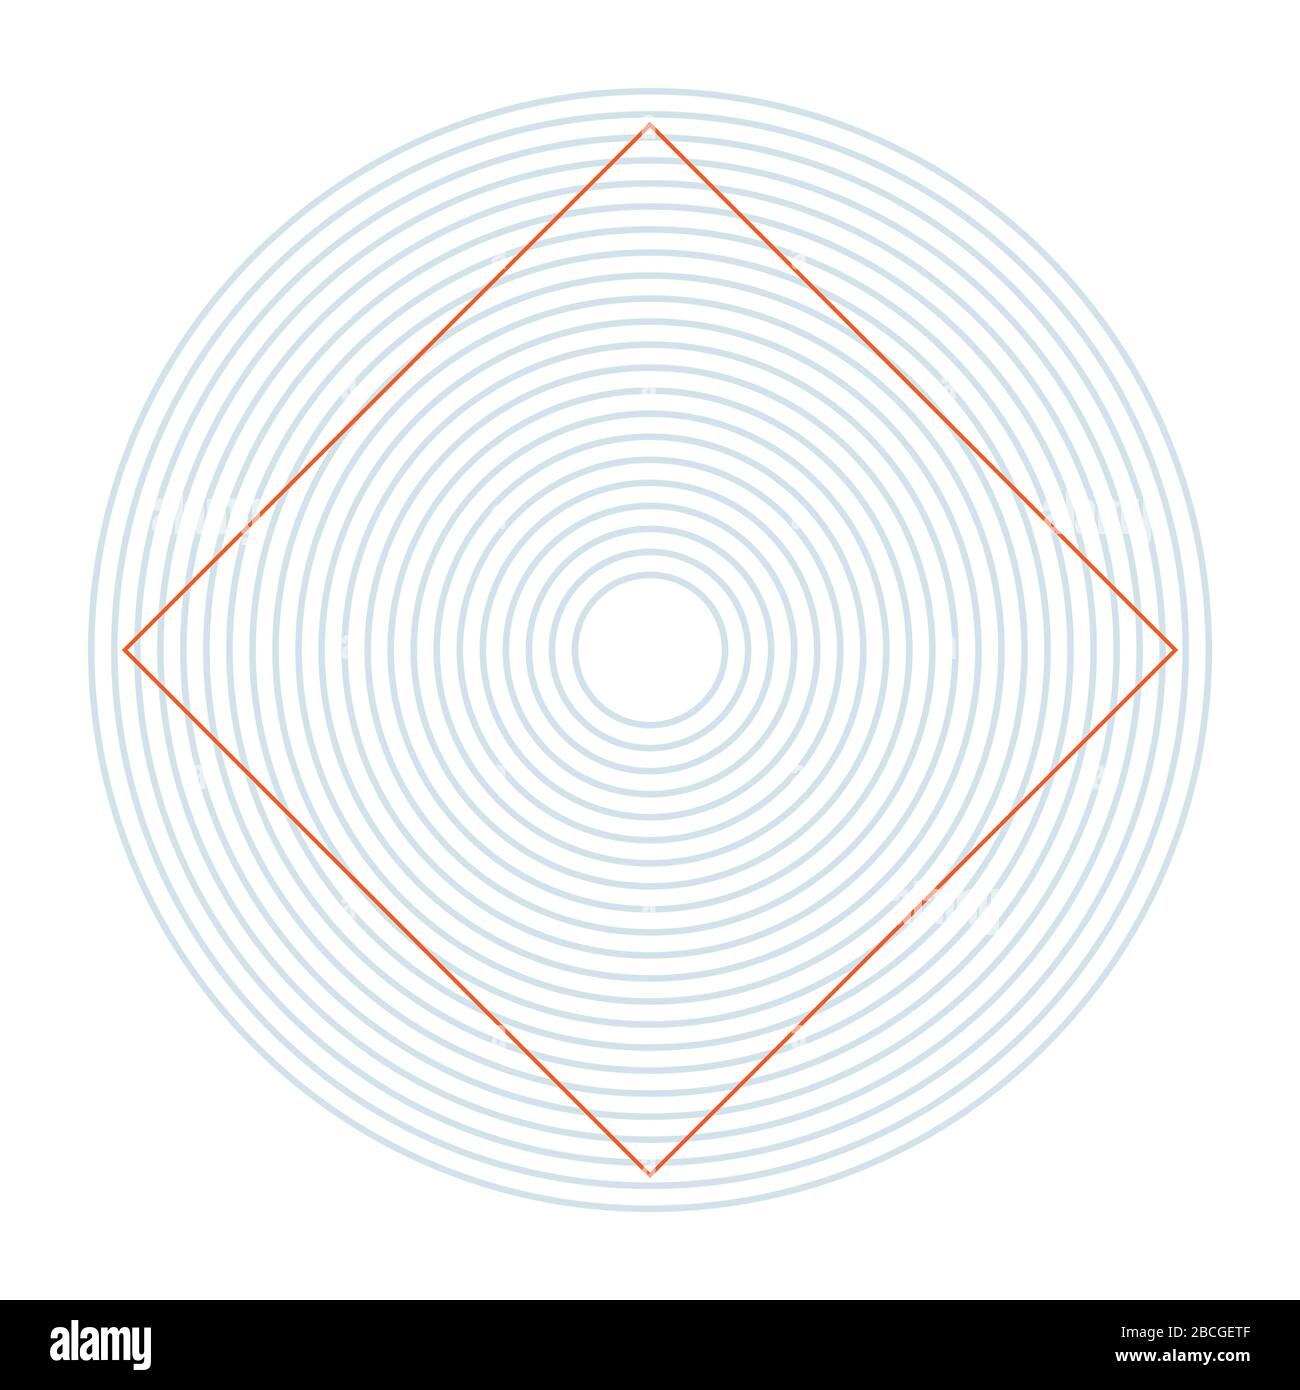 Die Ehrenstein-Illusion. Die Seiten eines Quadrats, das innerhalb eines Musters konzentrischer Kreise platziert wird, nehmen eine scheinbare gebogene Form an. Stockfoto